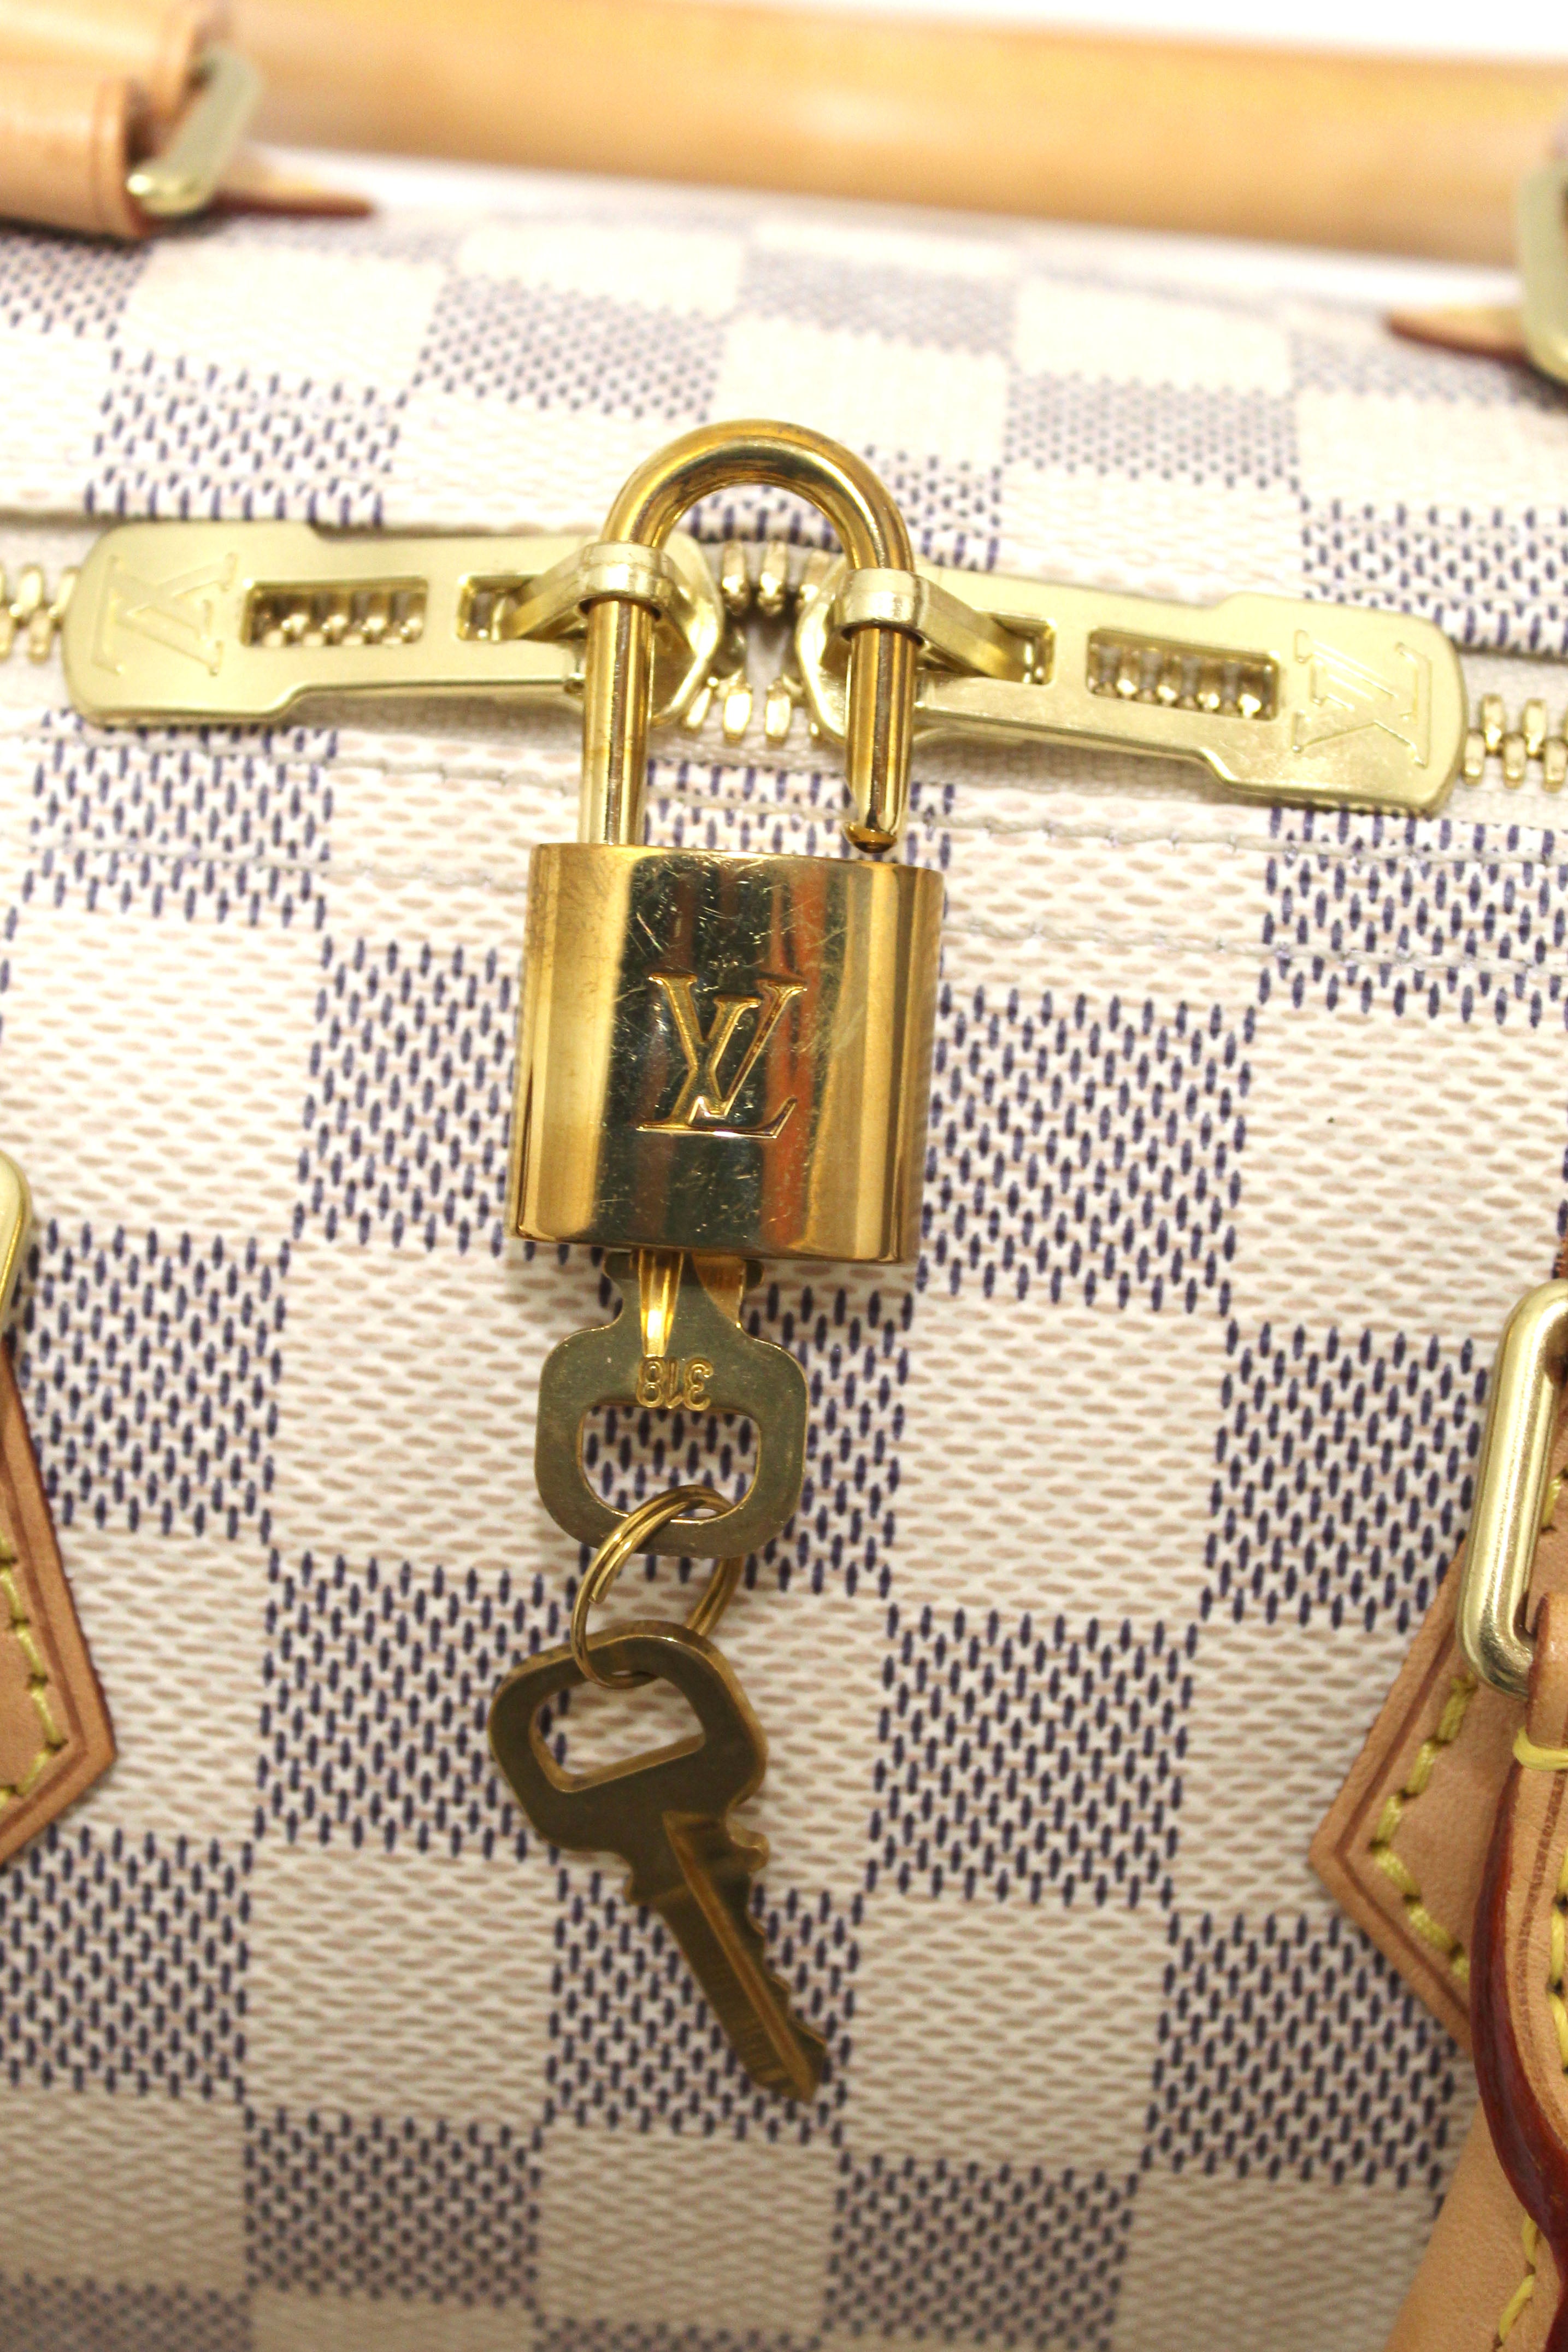 Authentic Louis Vuitton Damier Ebene Speedy 25 Bandouliere Bag